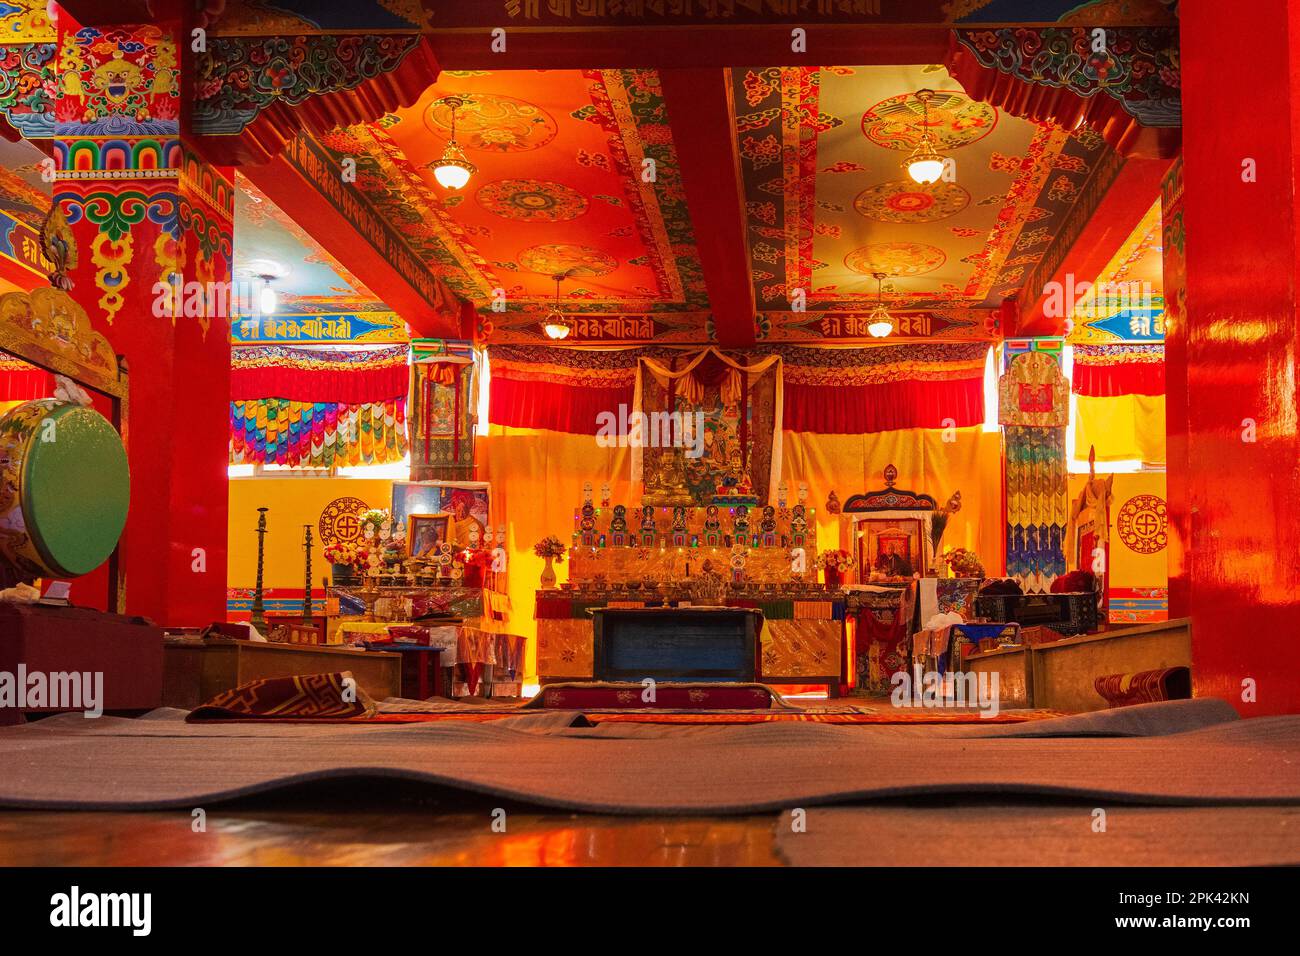 Monastère de Samdruptse, Ravangla, Sikkim, Inde - 20 octobre 2016 : vue intérieure du monastère bouddhiste de Samdruptse, Sikkim, Inde. Image autorisée. Banque D'Images